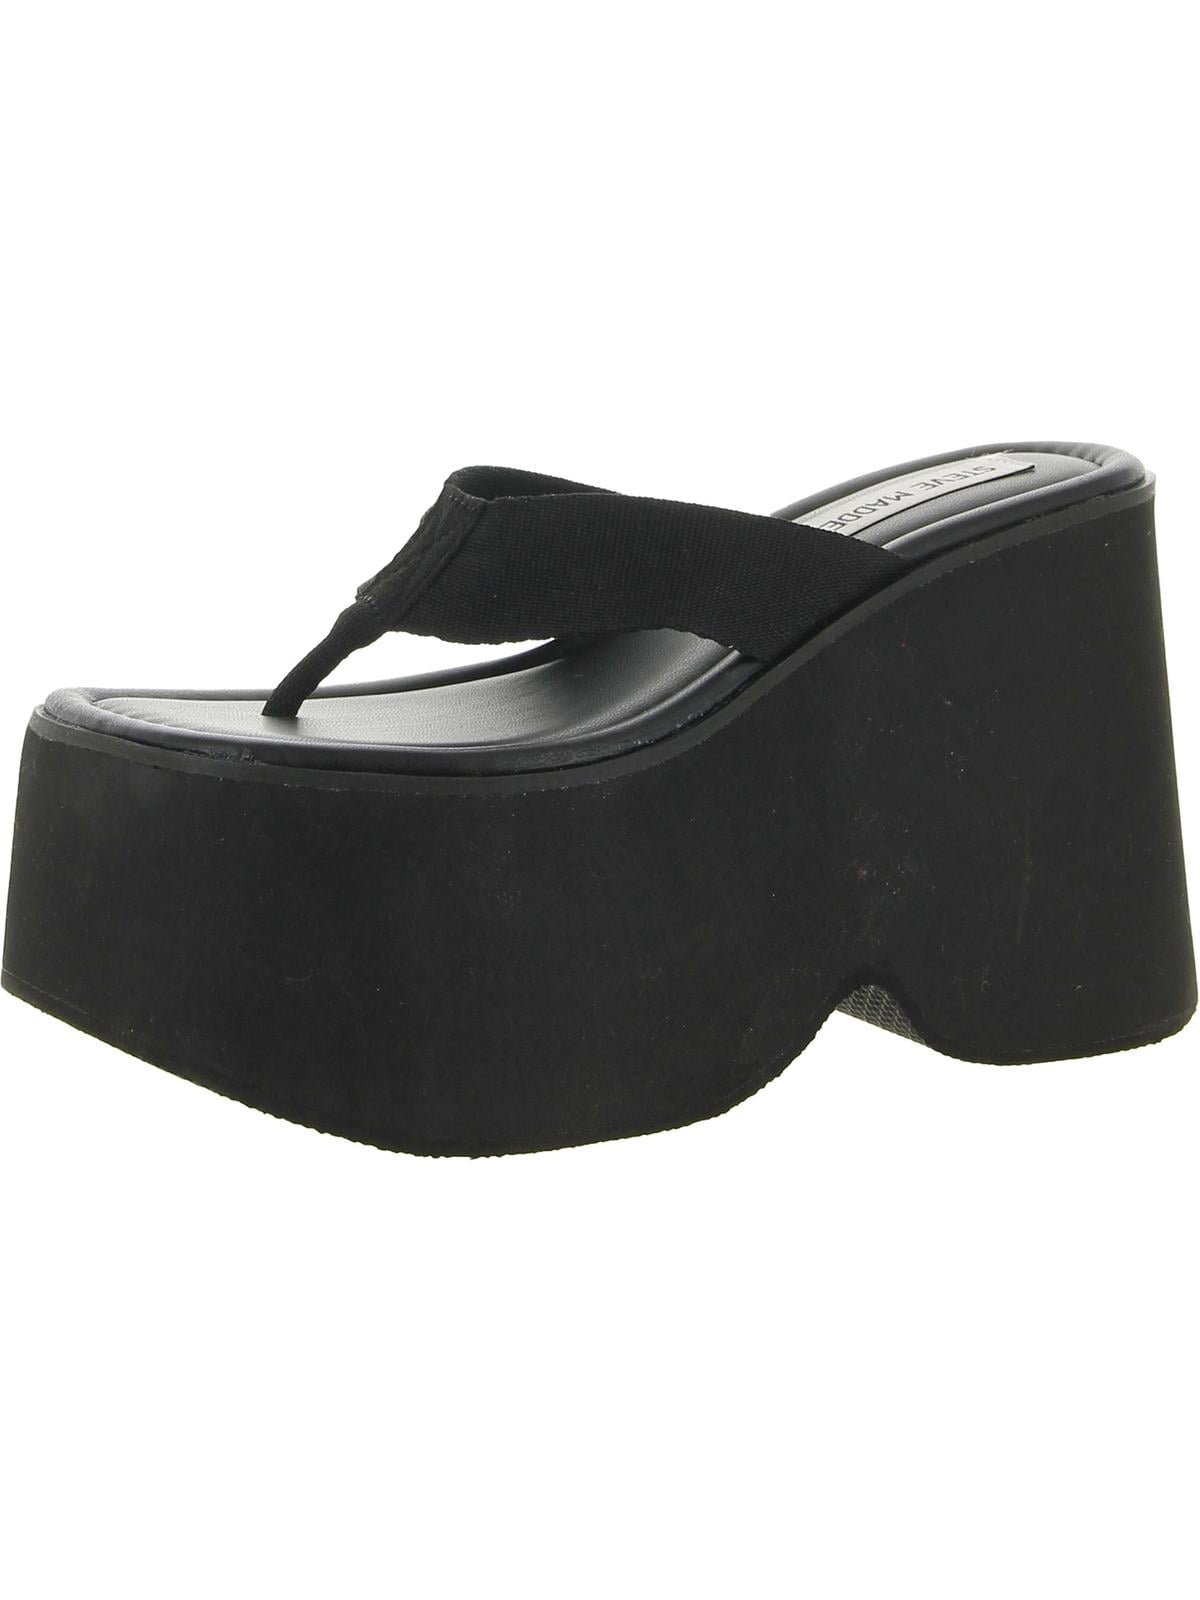 Steve Madden Womens Gwen Flip-Flops Thong Platform Sandals - Walmart.com